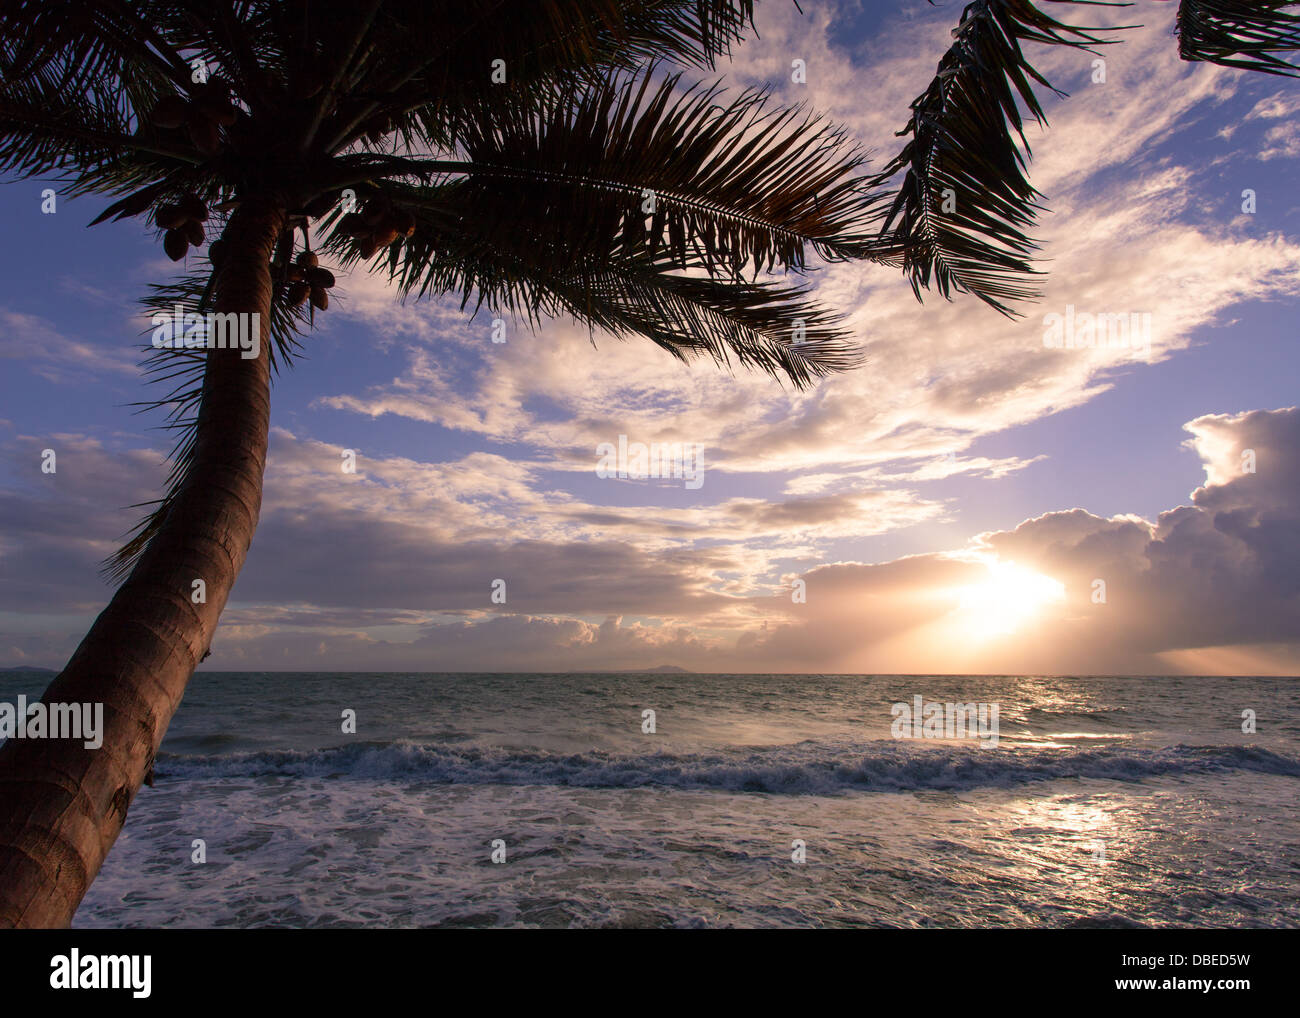 Sunrise at Las Palmas, Humacao, Puerto Rico. Stock Photo